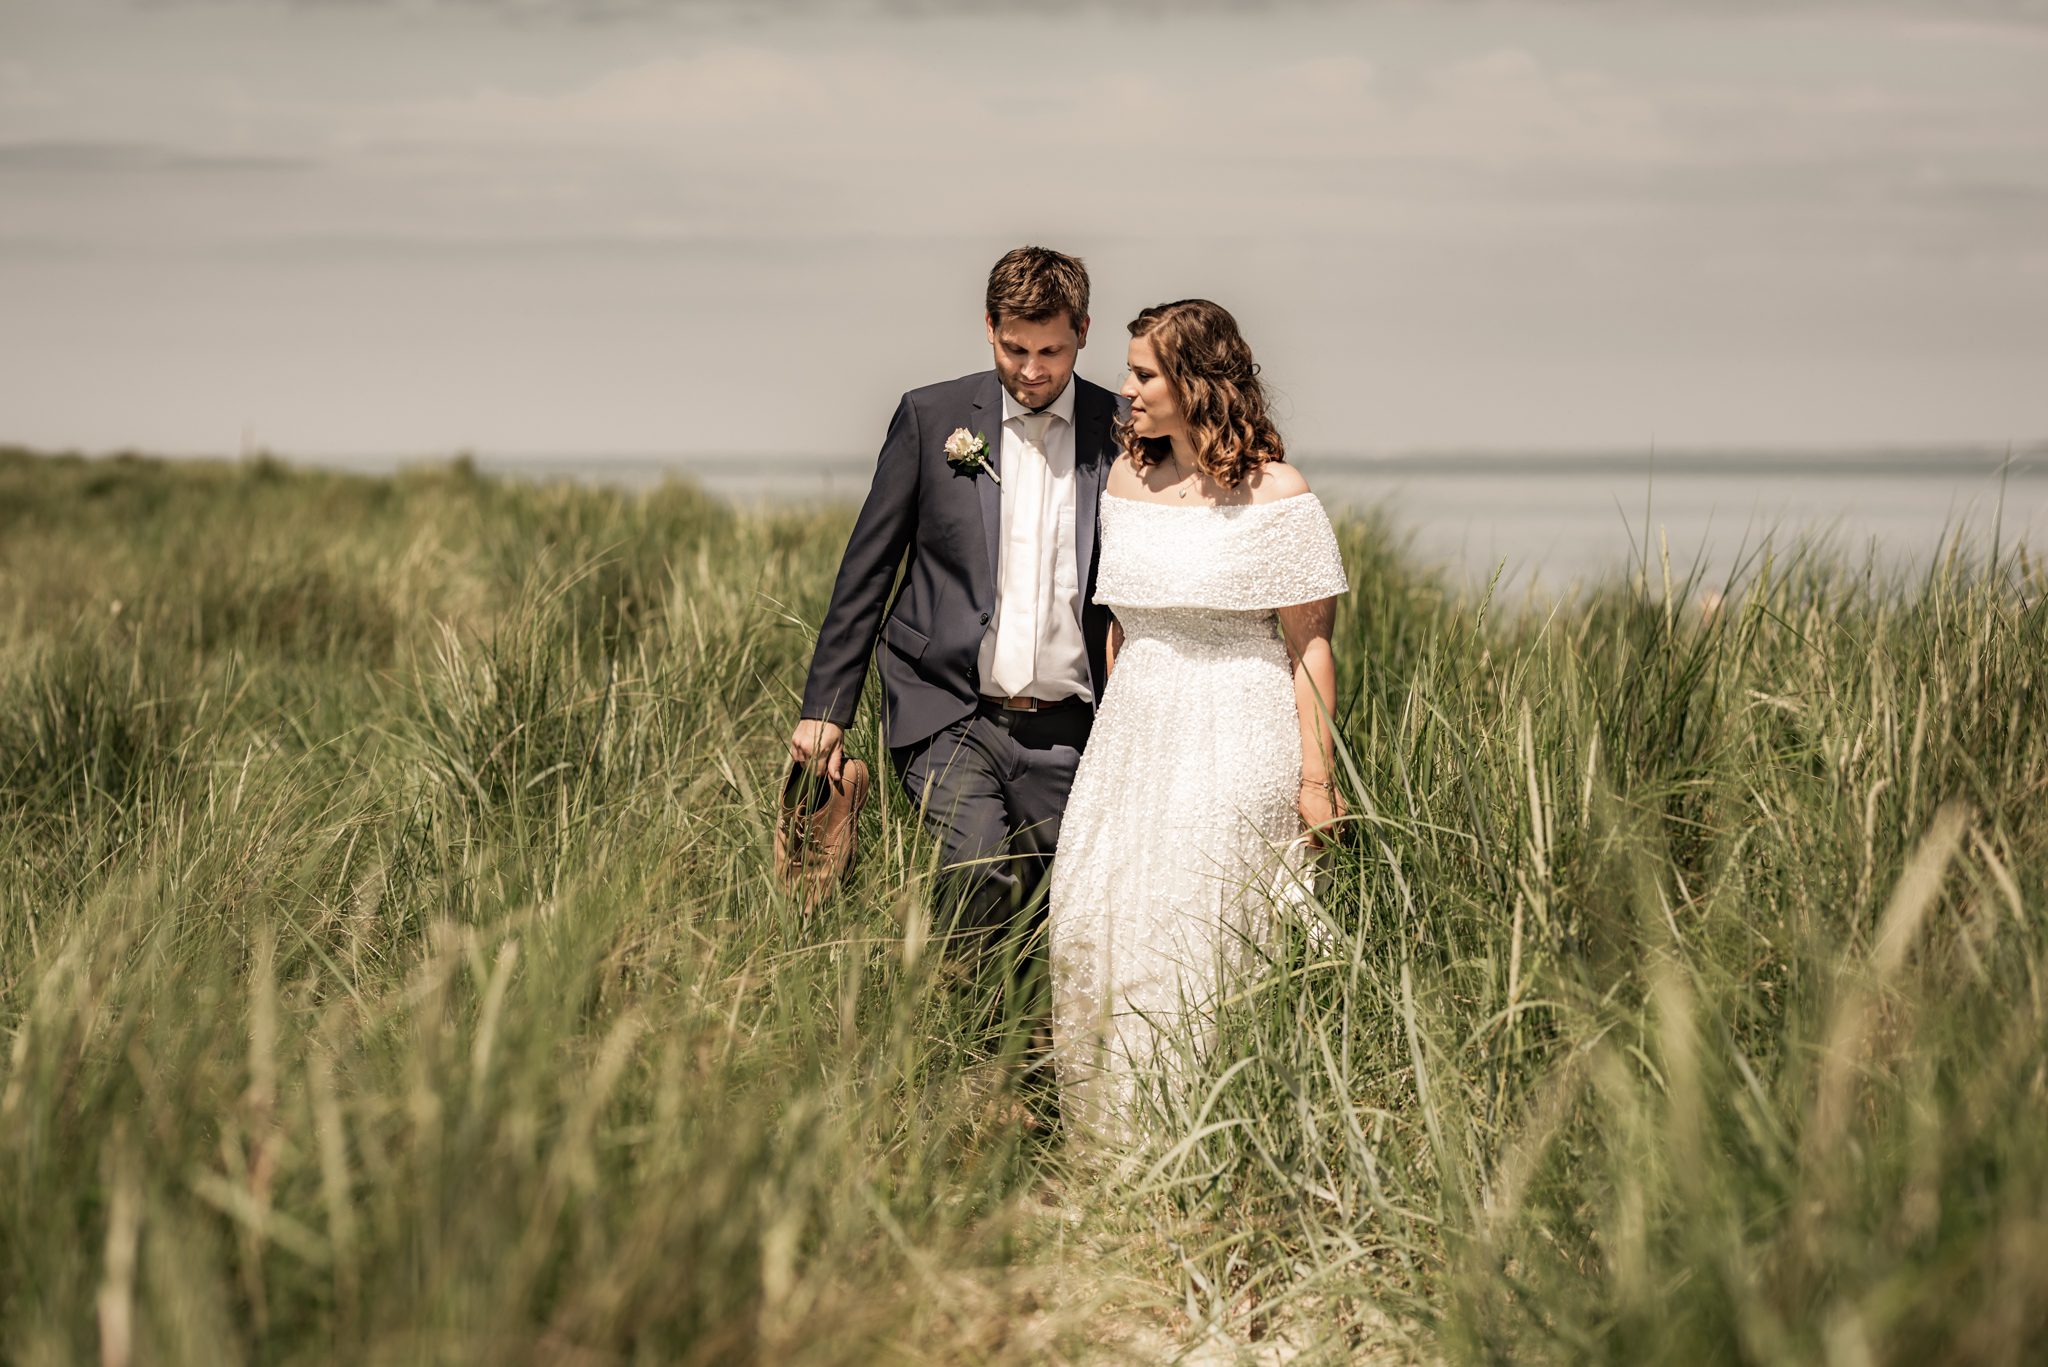 Janine und Sebastian | Elopement Wedding in Hooksiel und Schillig 5